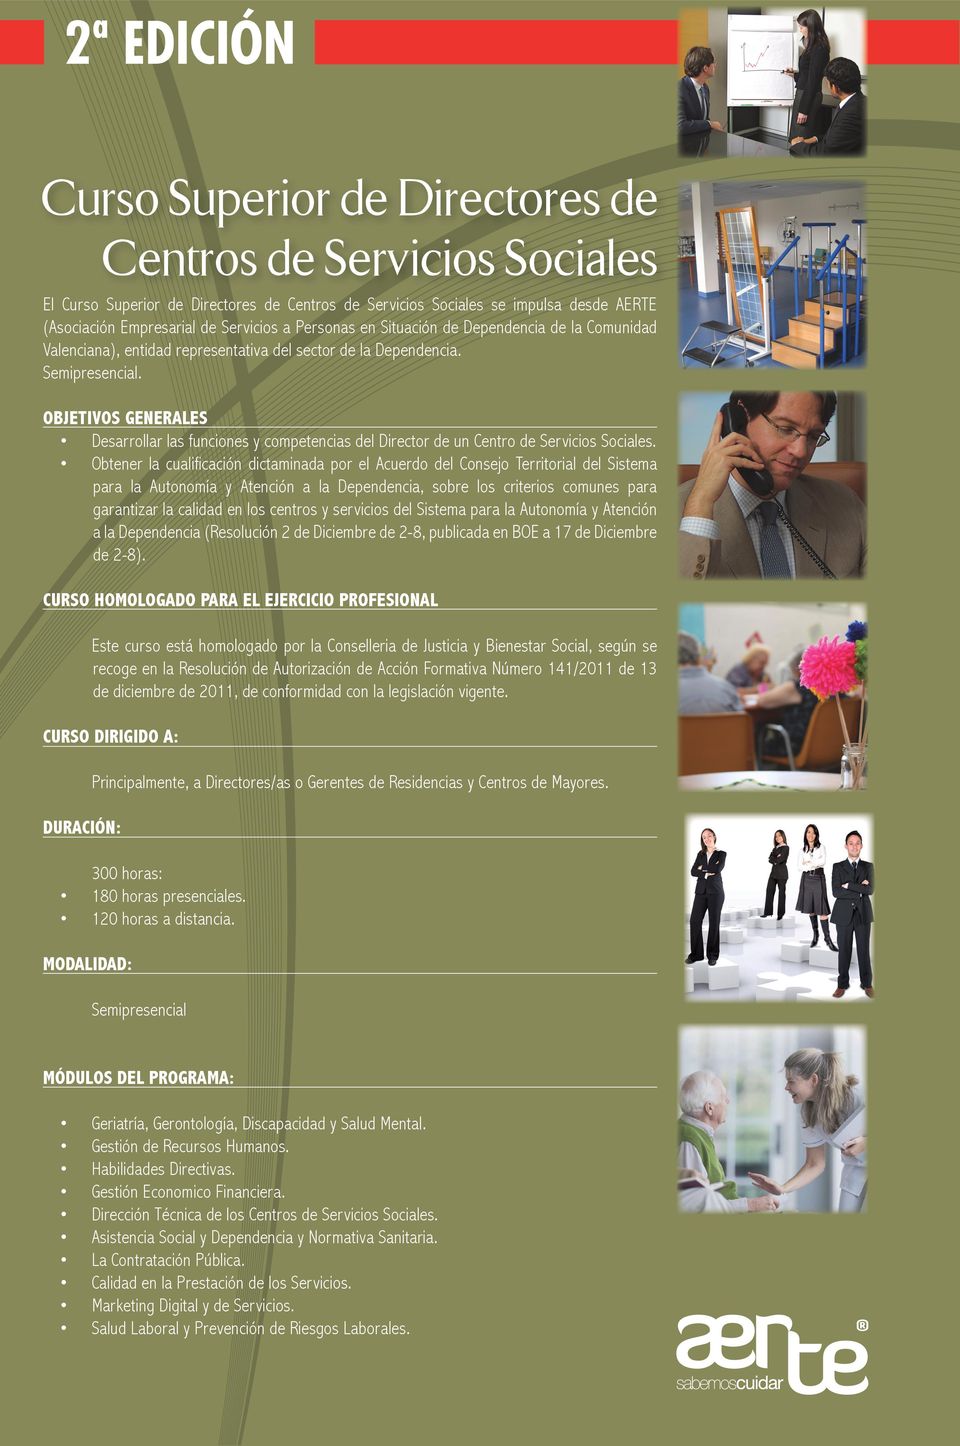 OBJETIVOS GENERALES Desarrollar las funciones y competencias del Director de un Centro de Servicios Sociales.